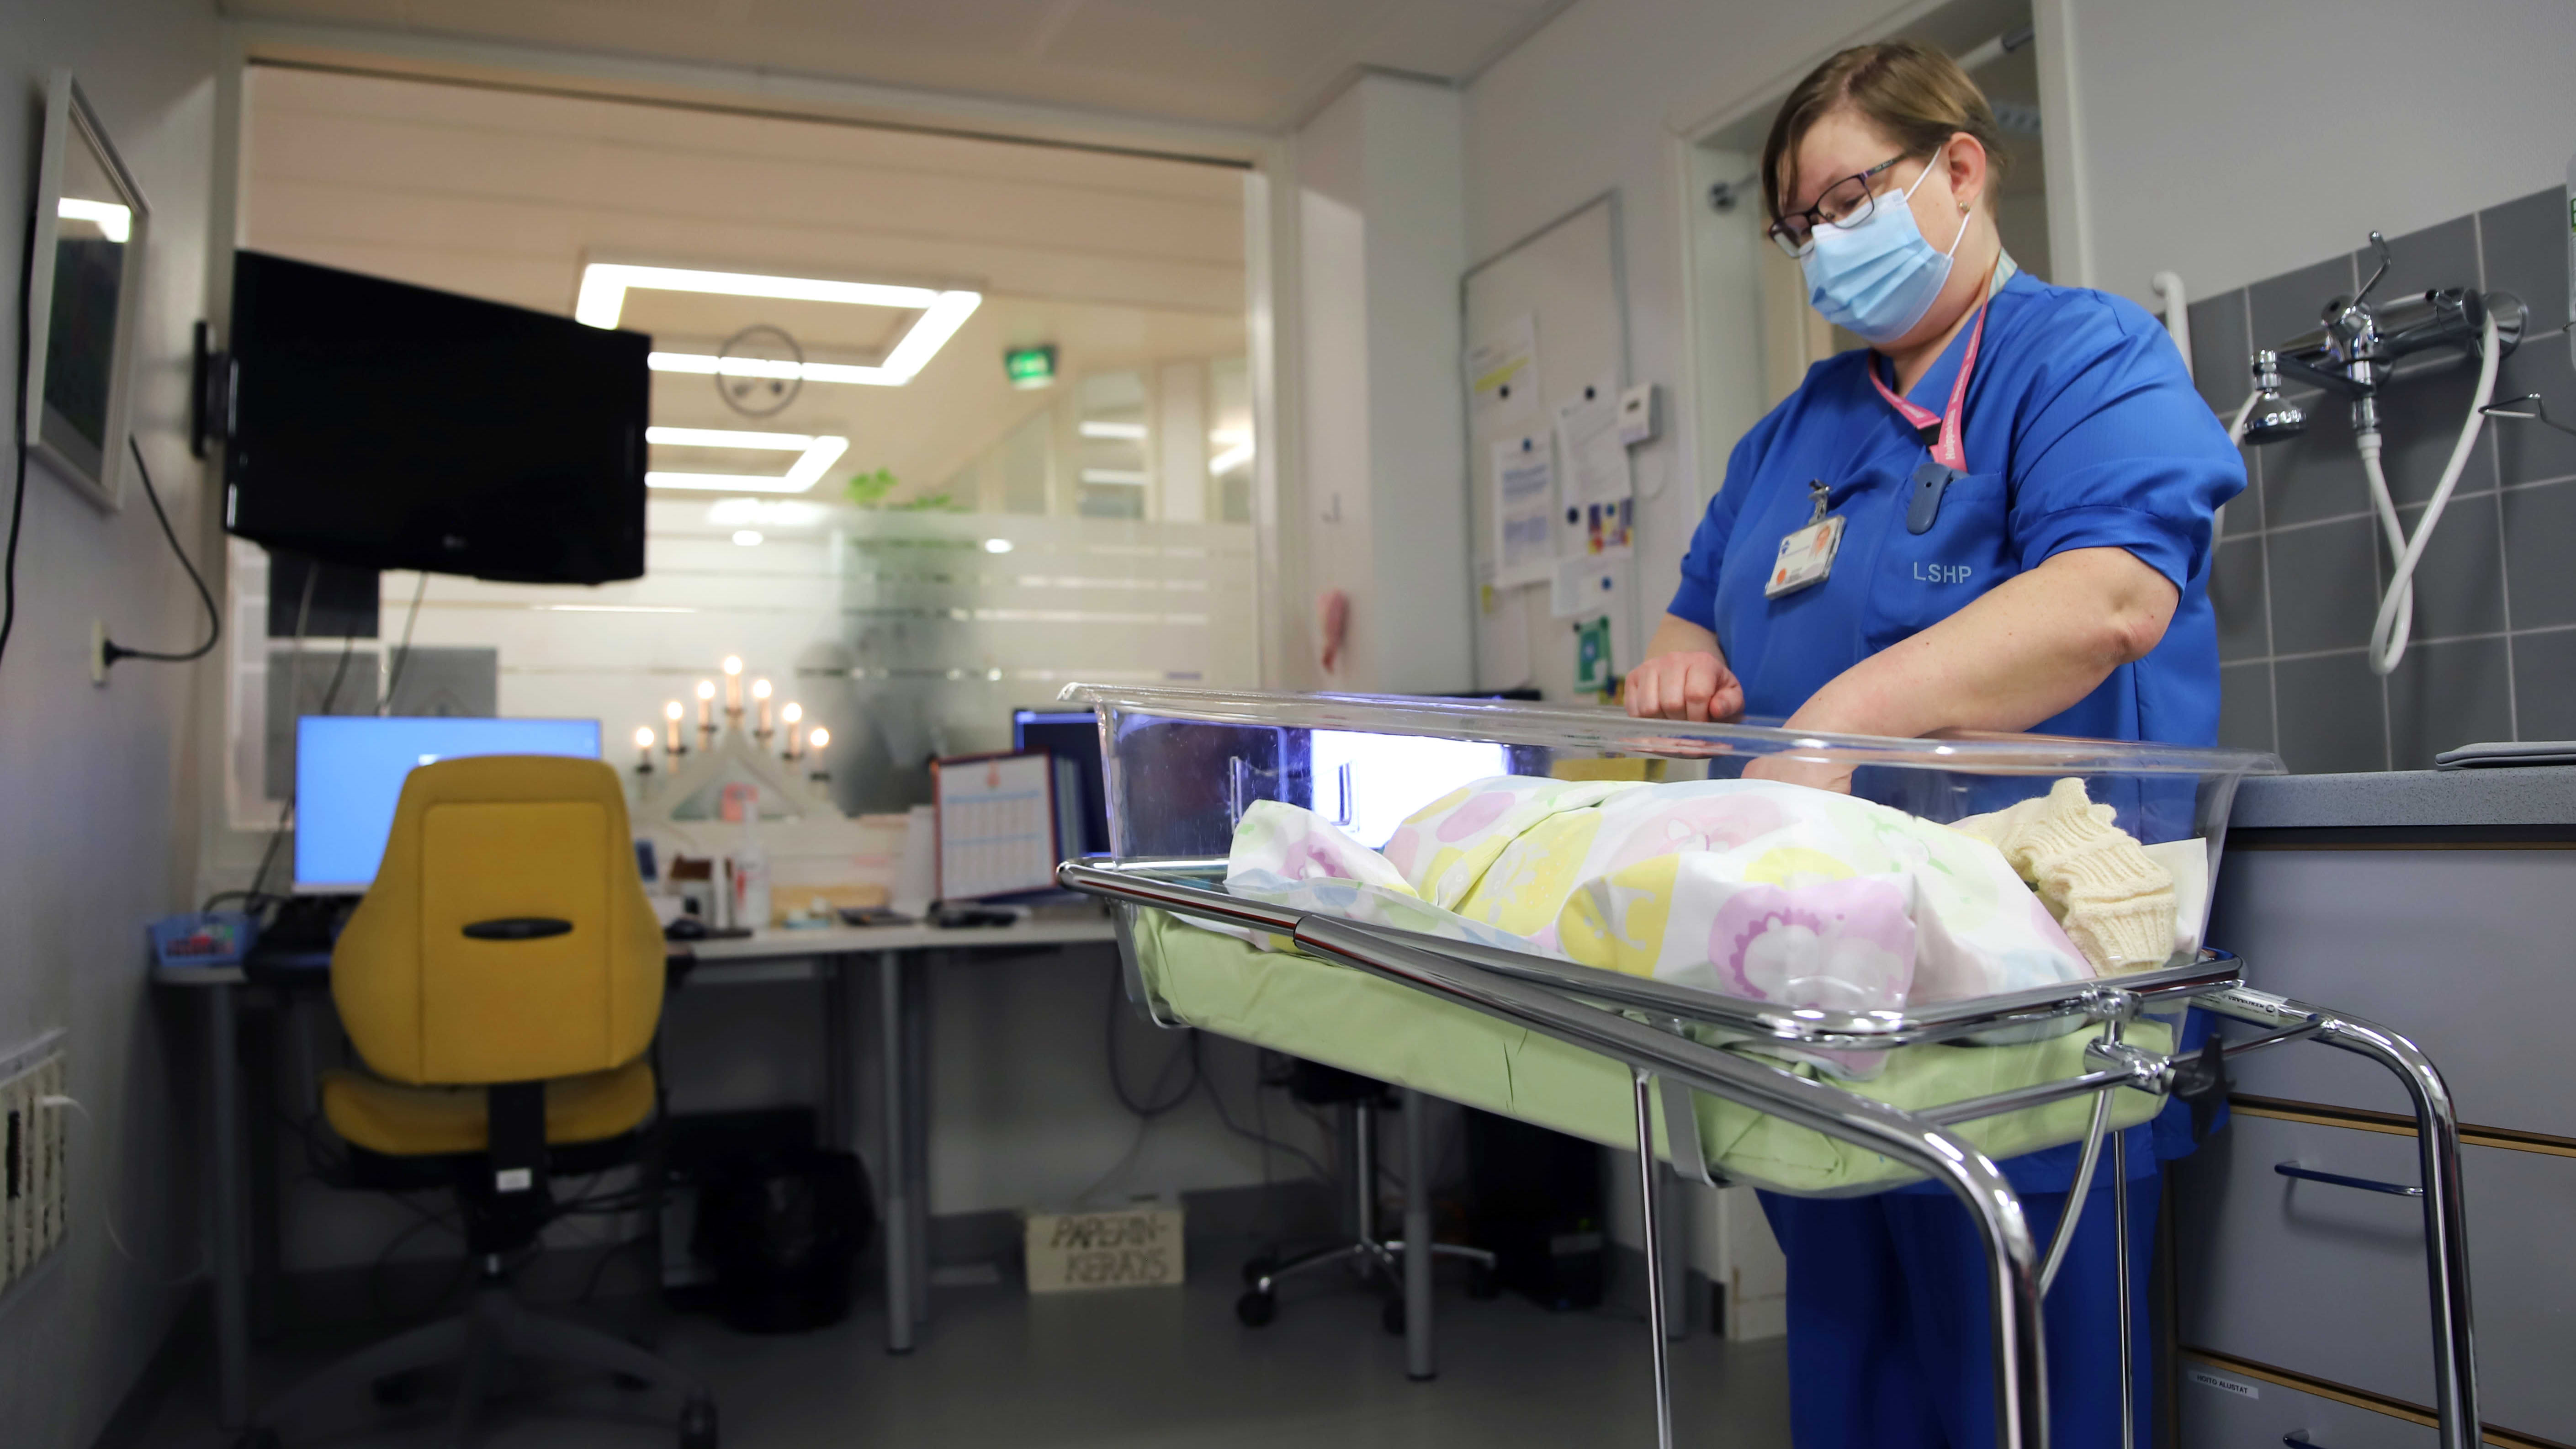 Kätilö Carita Yli-Suvanto Lapin keskussairaalan synnytysosastolla vastasyntyneen sairaalakätkyeen äärellä.